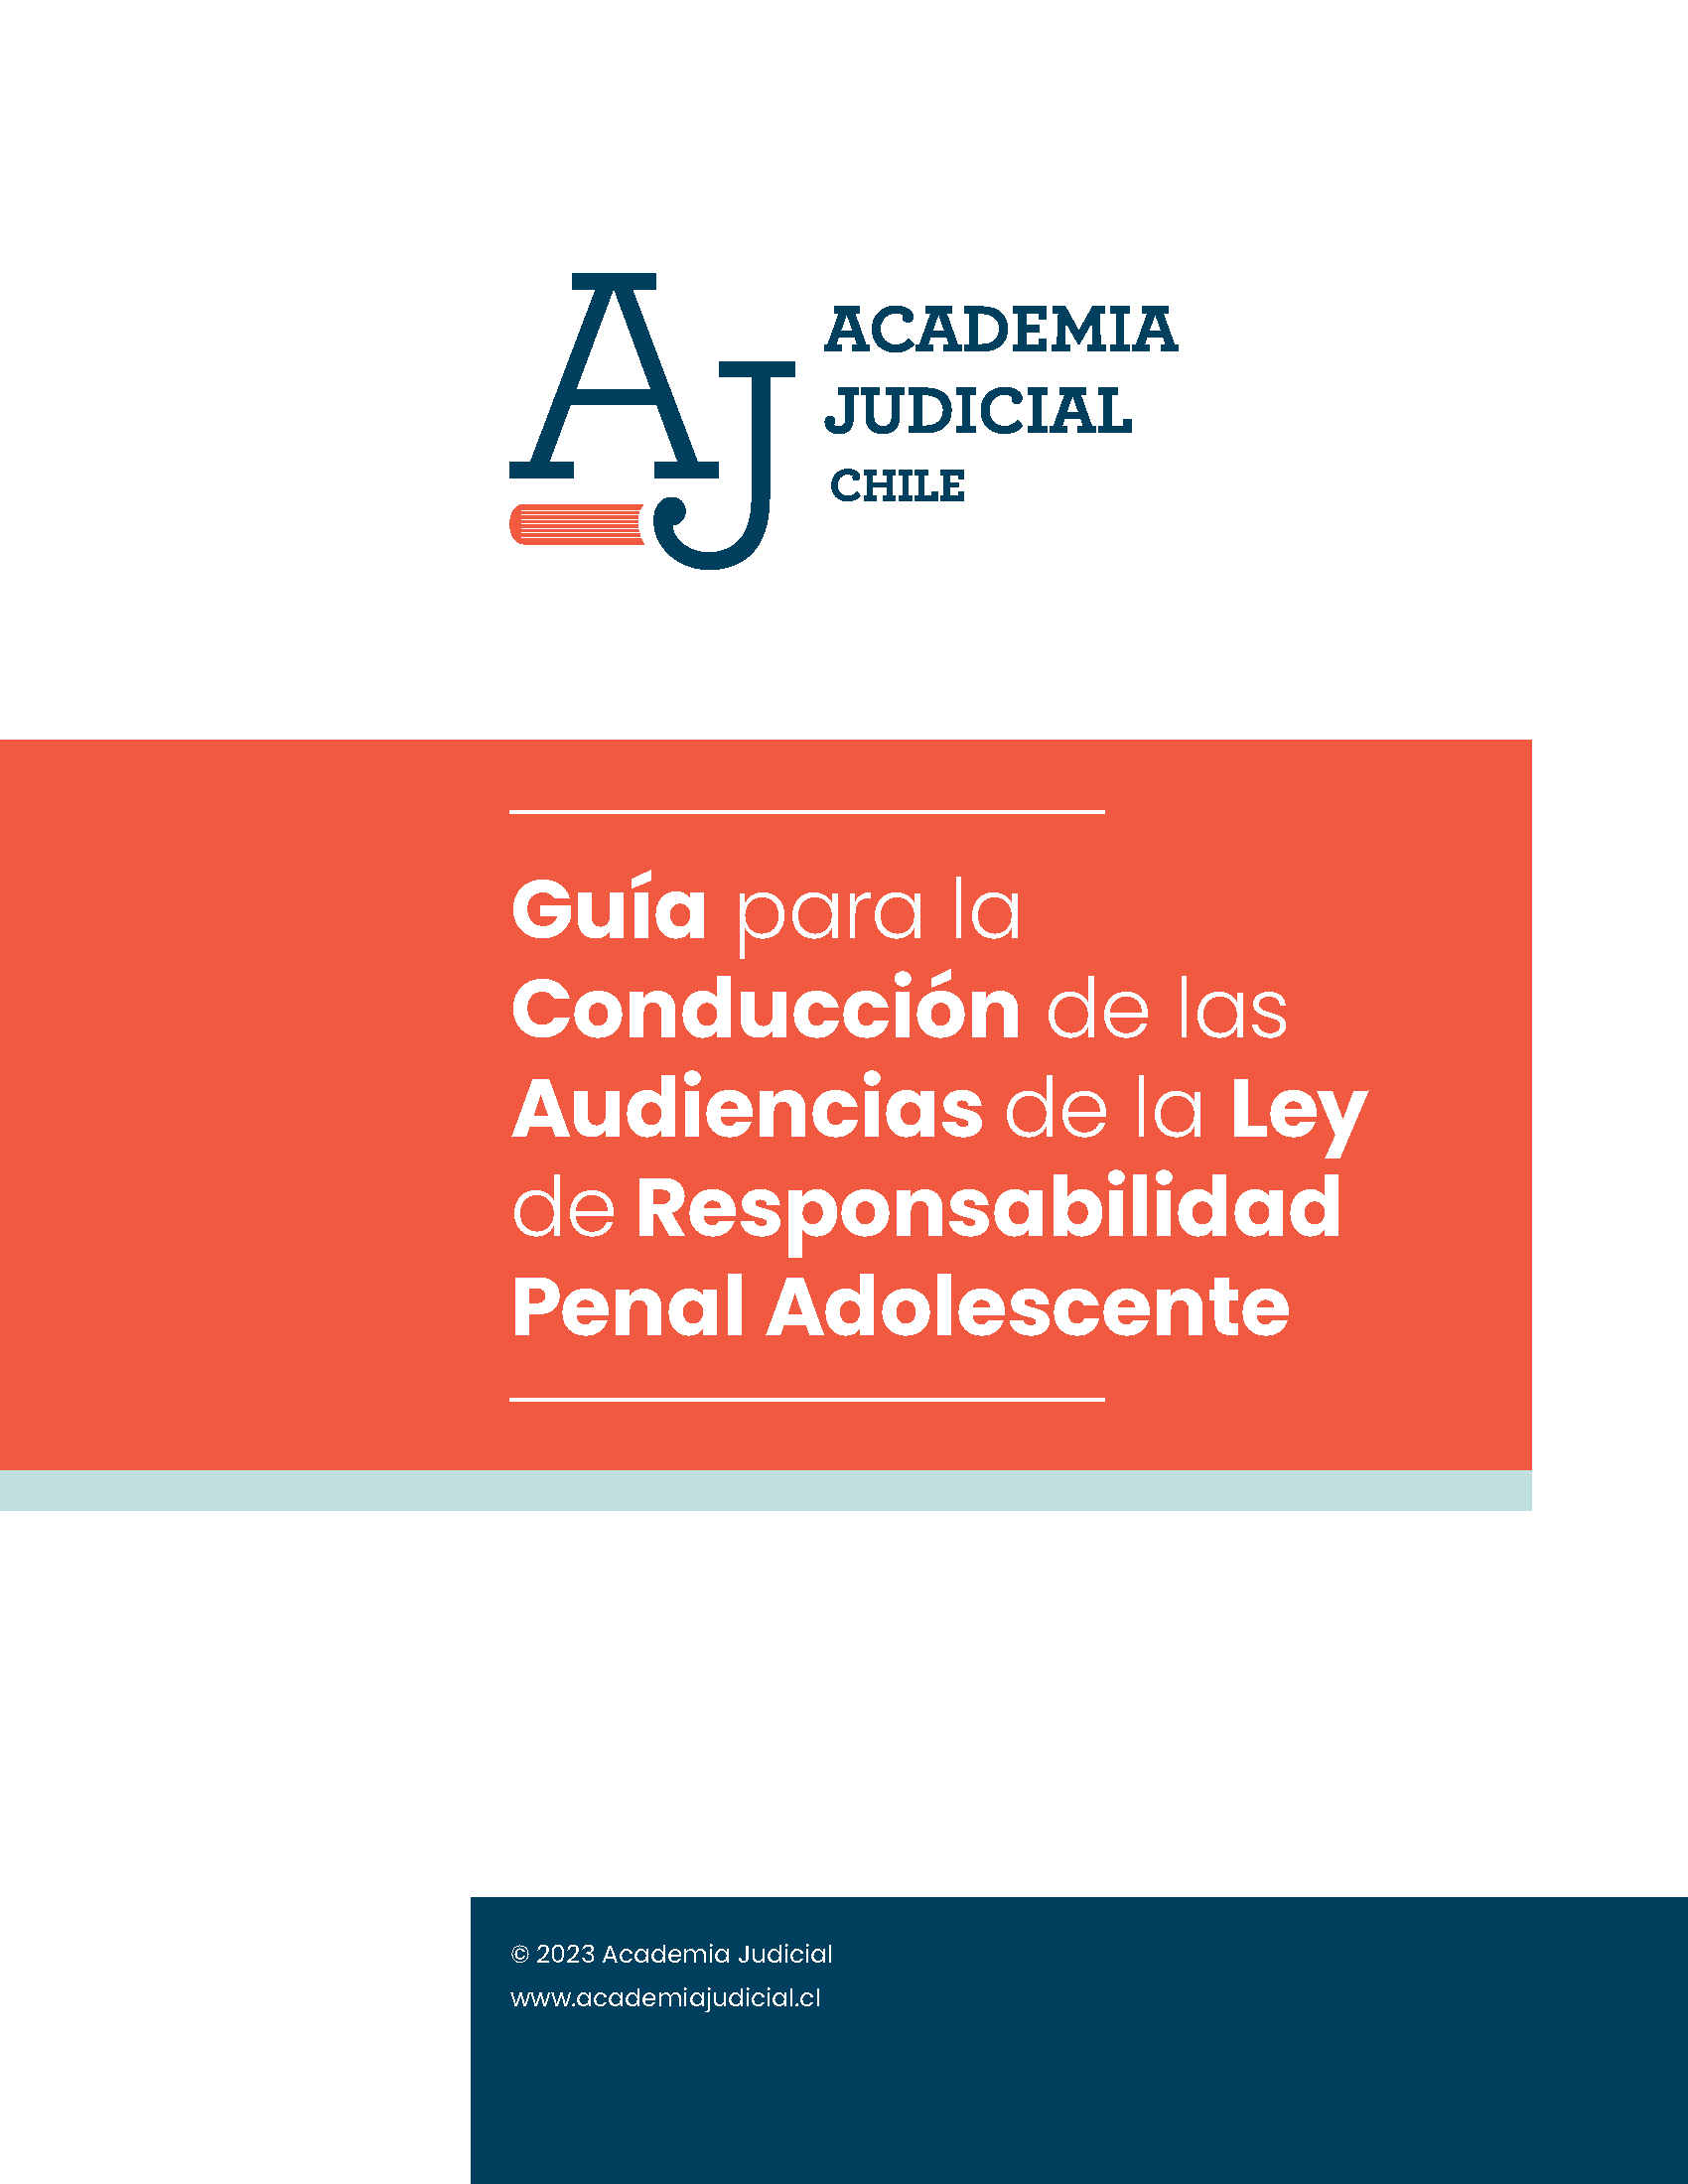 Guía para la conducción de las audiencias de la Ley de Responsabilidad Penal Adolescente